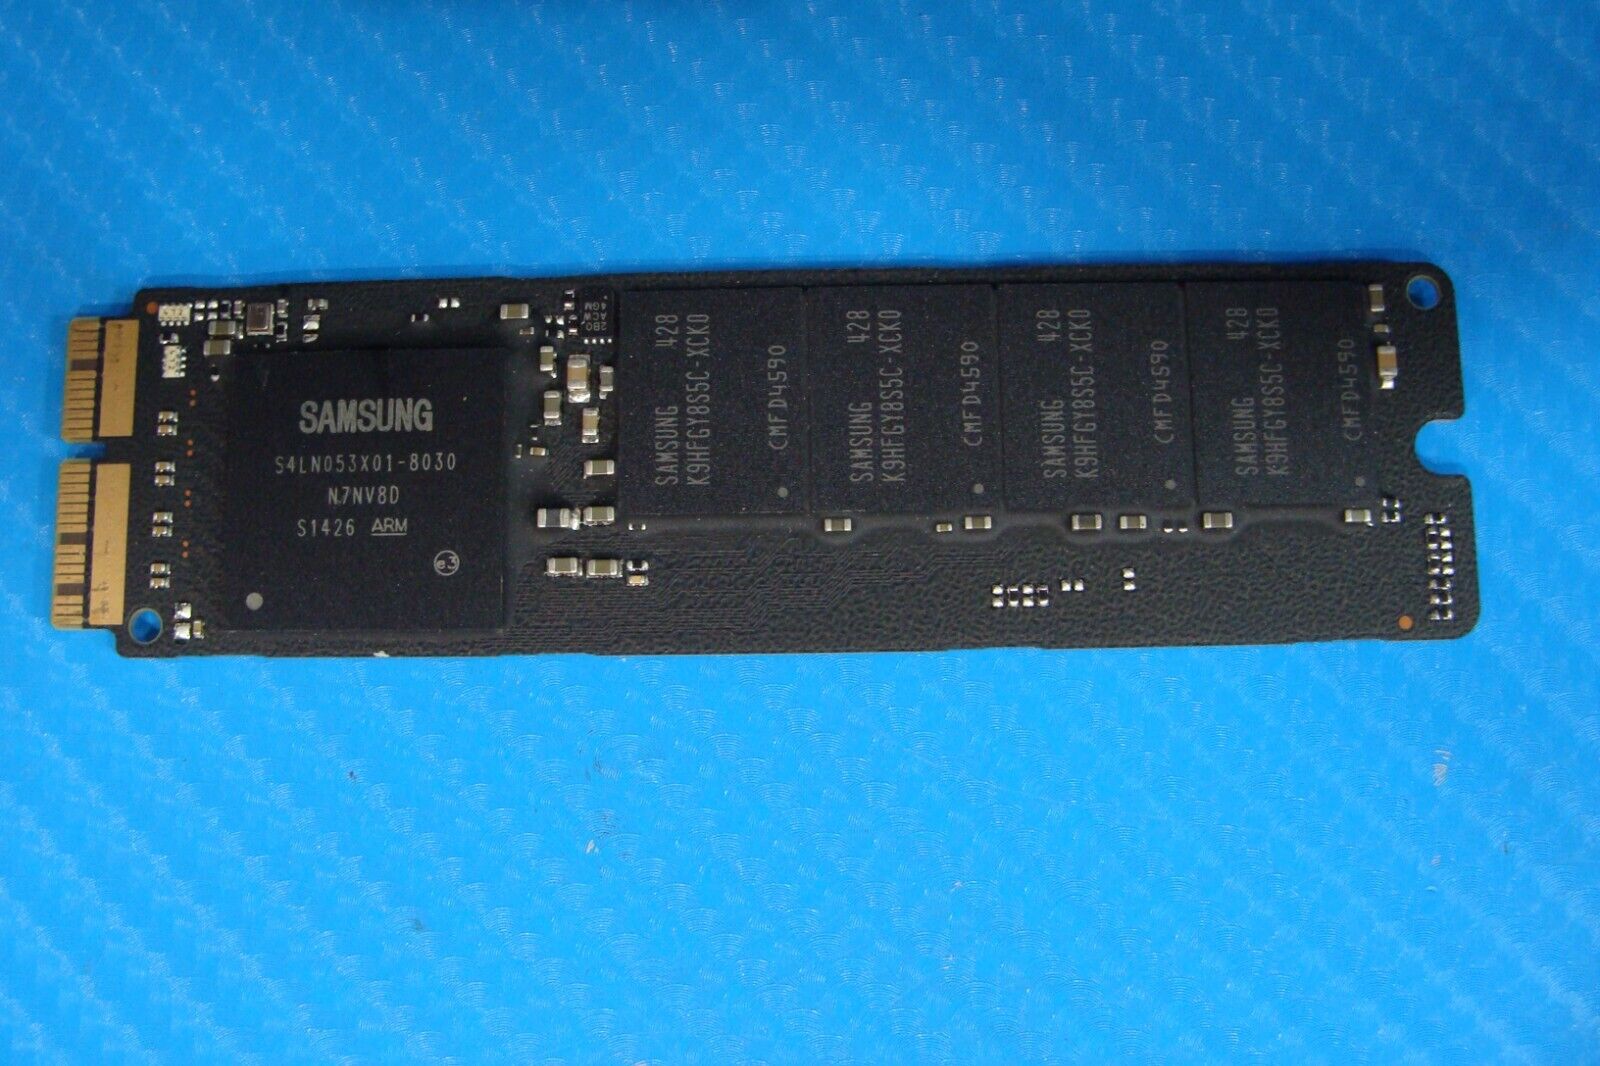 MacBook Pro A1398 Samsung 256GB SSD Solid State Drive 655-1803D MZ-JPU256T/0A6